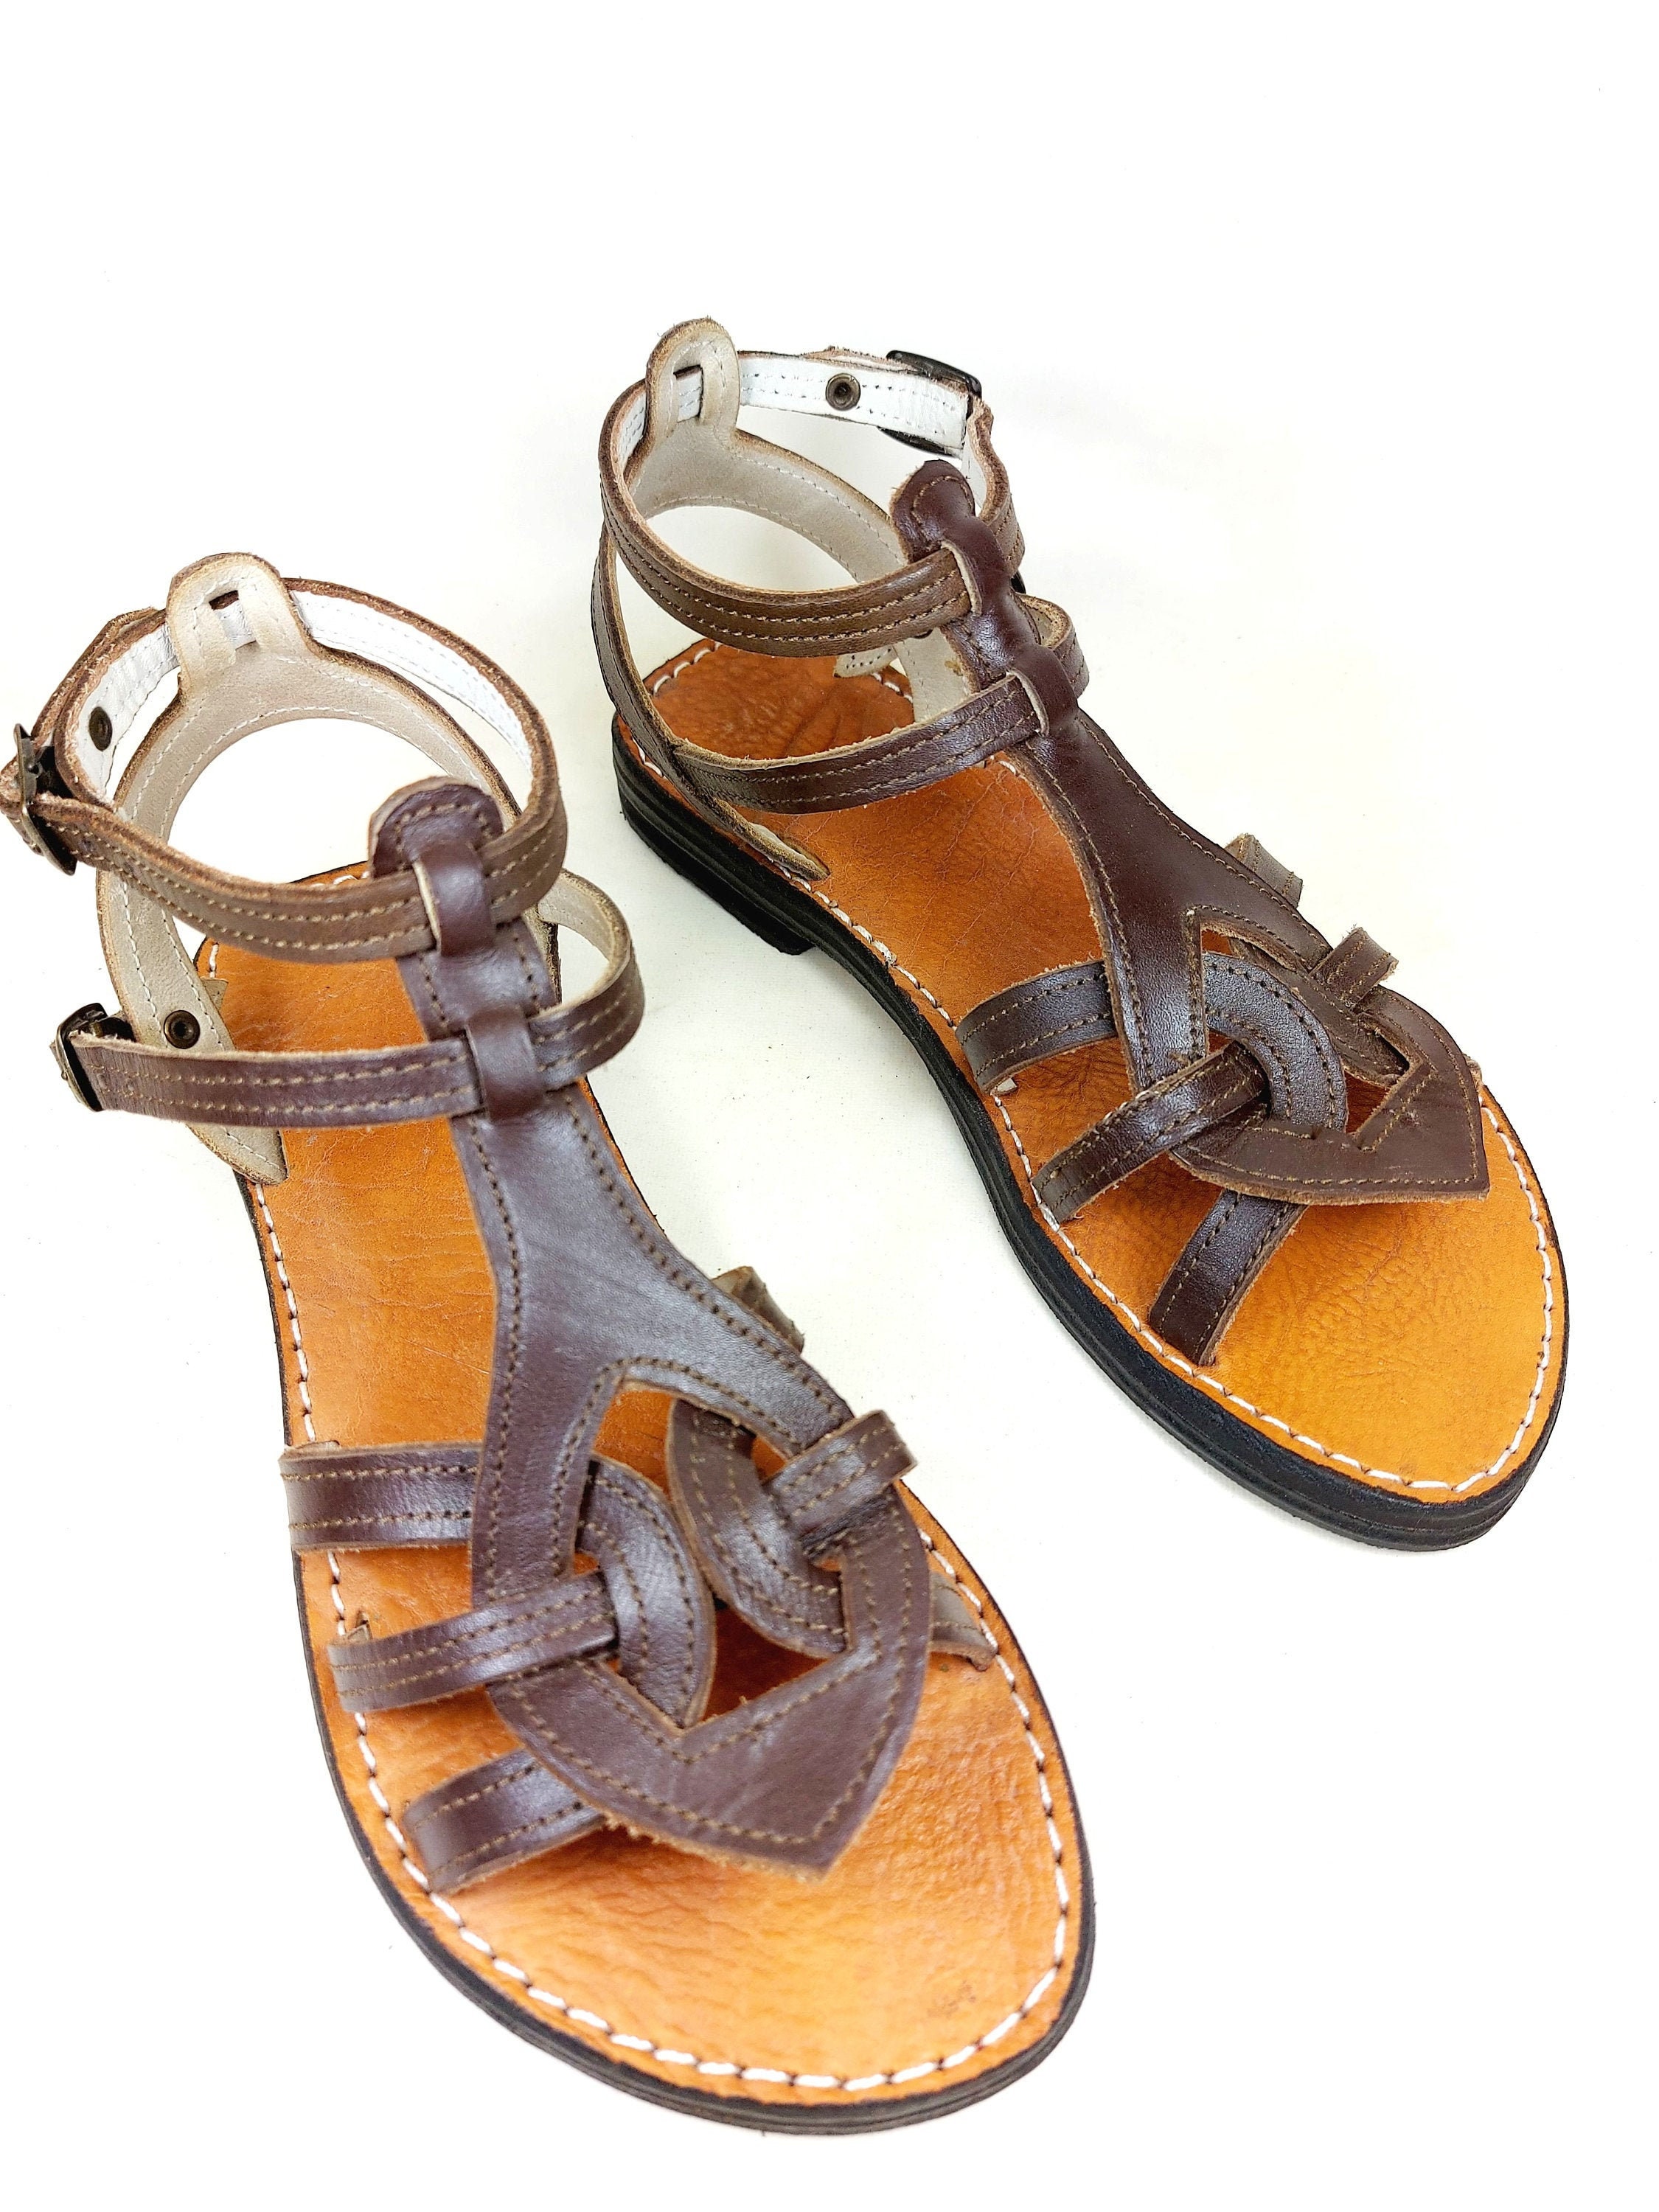 semelles caoutchouc antidérapantes Traditionnelles spartiates Chaussures Chaussures femme Sandales Nu-pieds sandales été robuste confortable légère Sandales en cuir pour femmes 